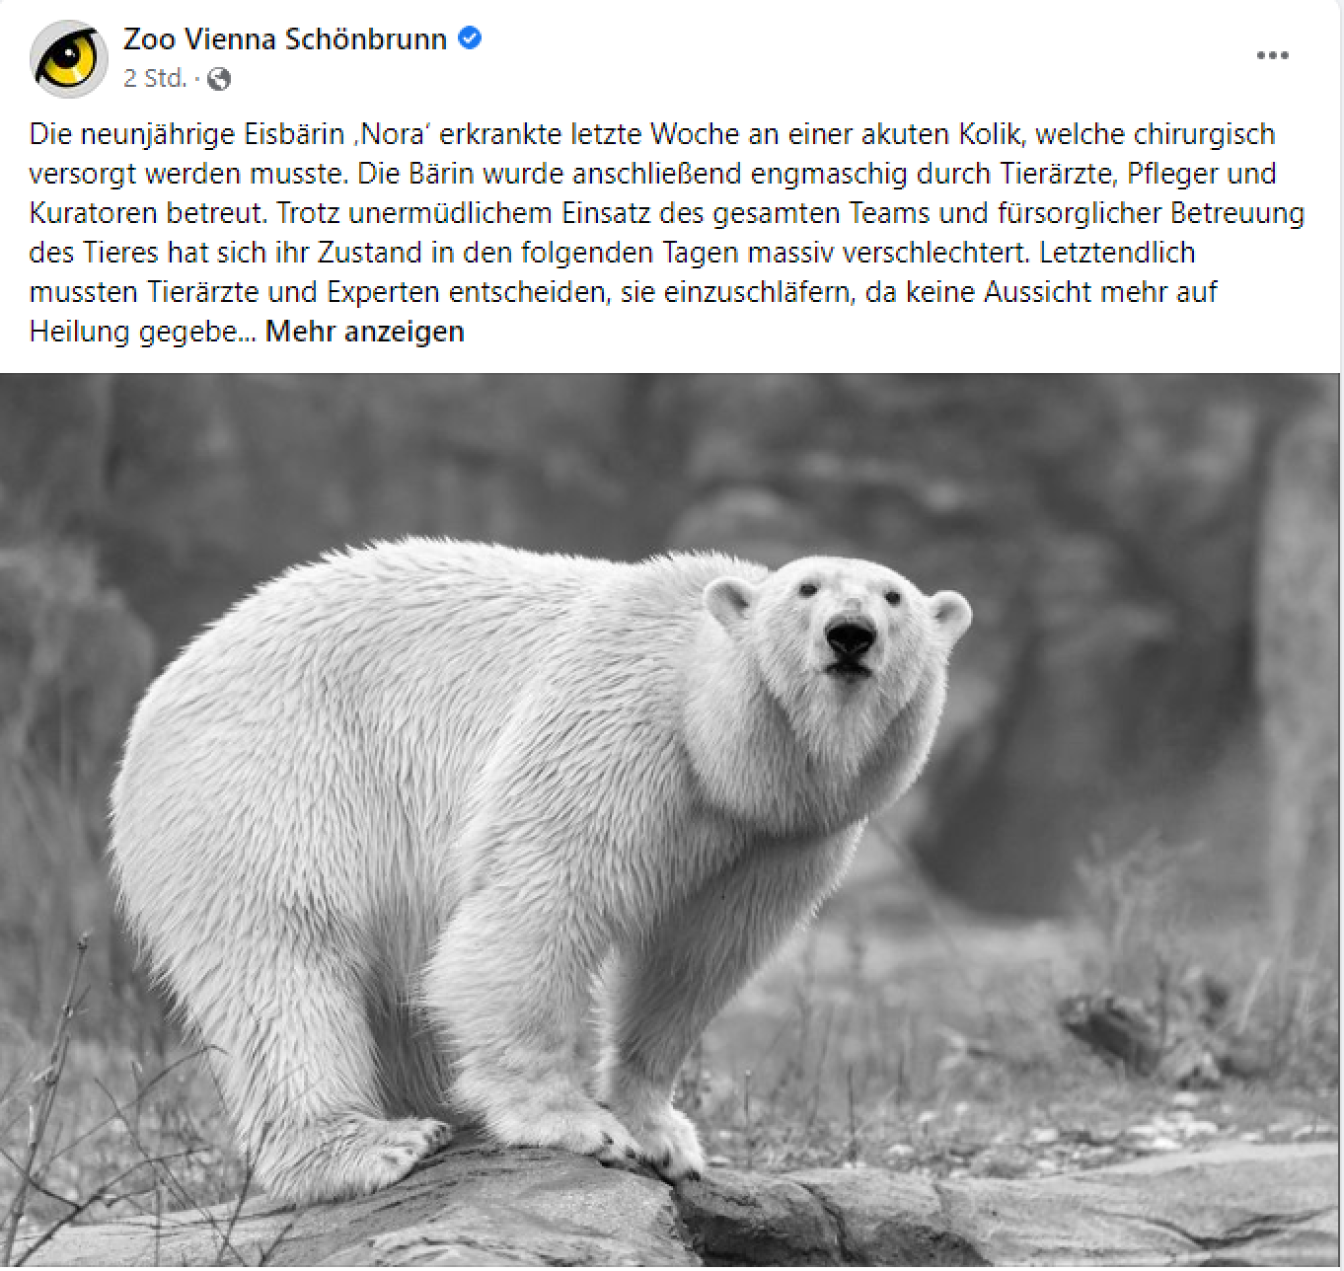 Via Facebook verkündete der Tiergarten Schönbrunn den Tod der Eisbärin "Nora".